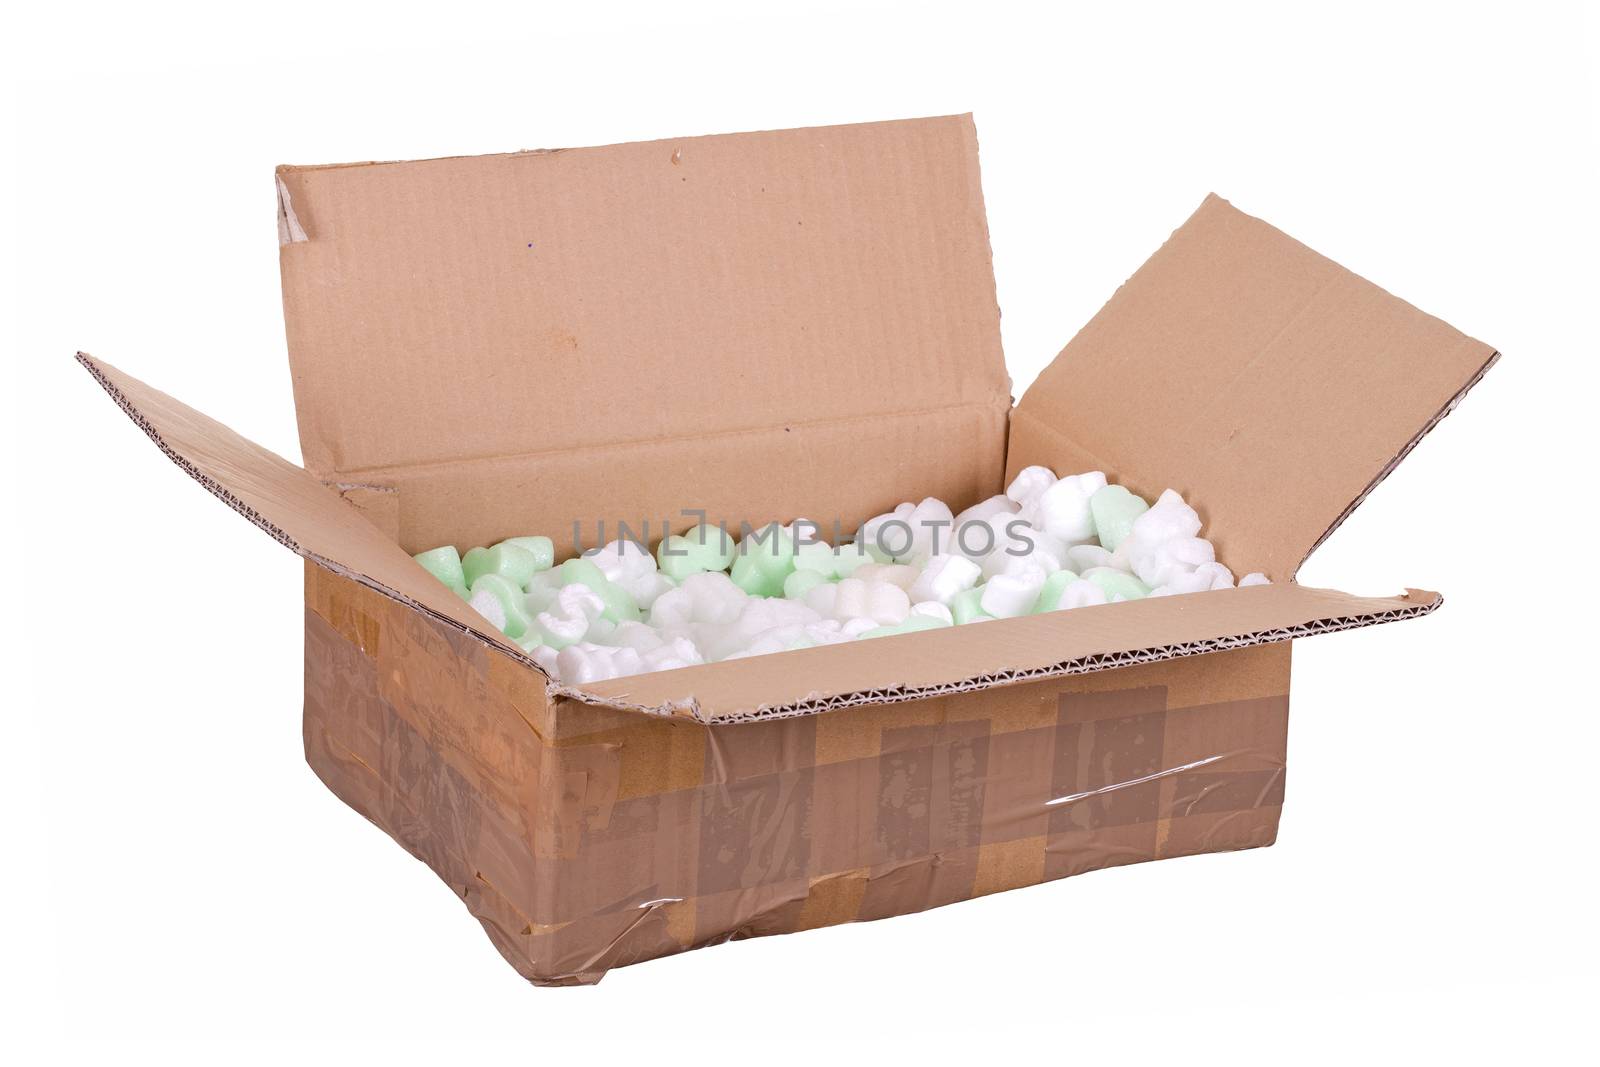 cardboard box with styrofoam by pterwort